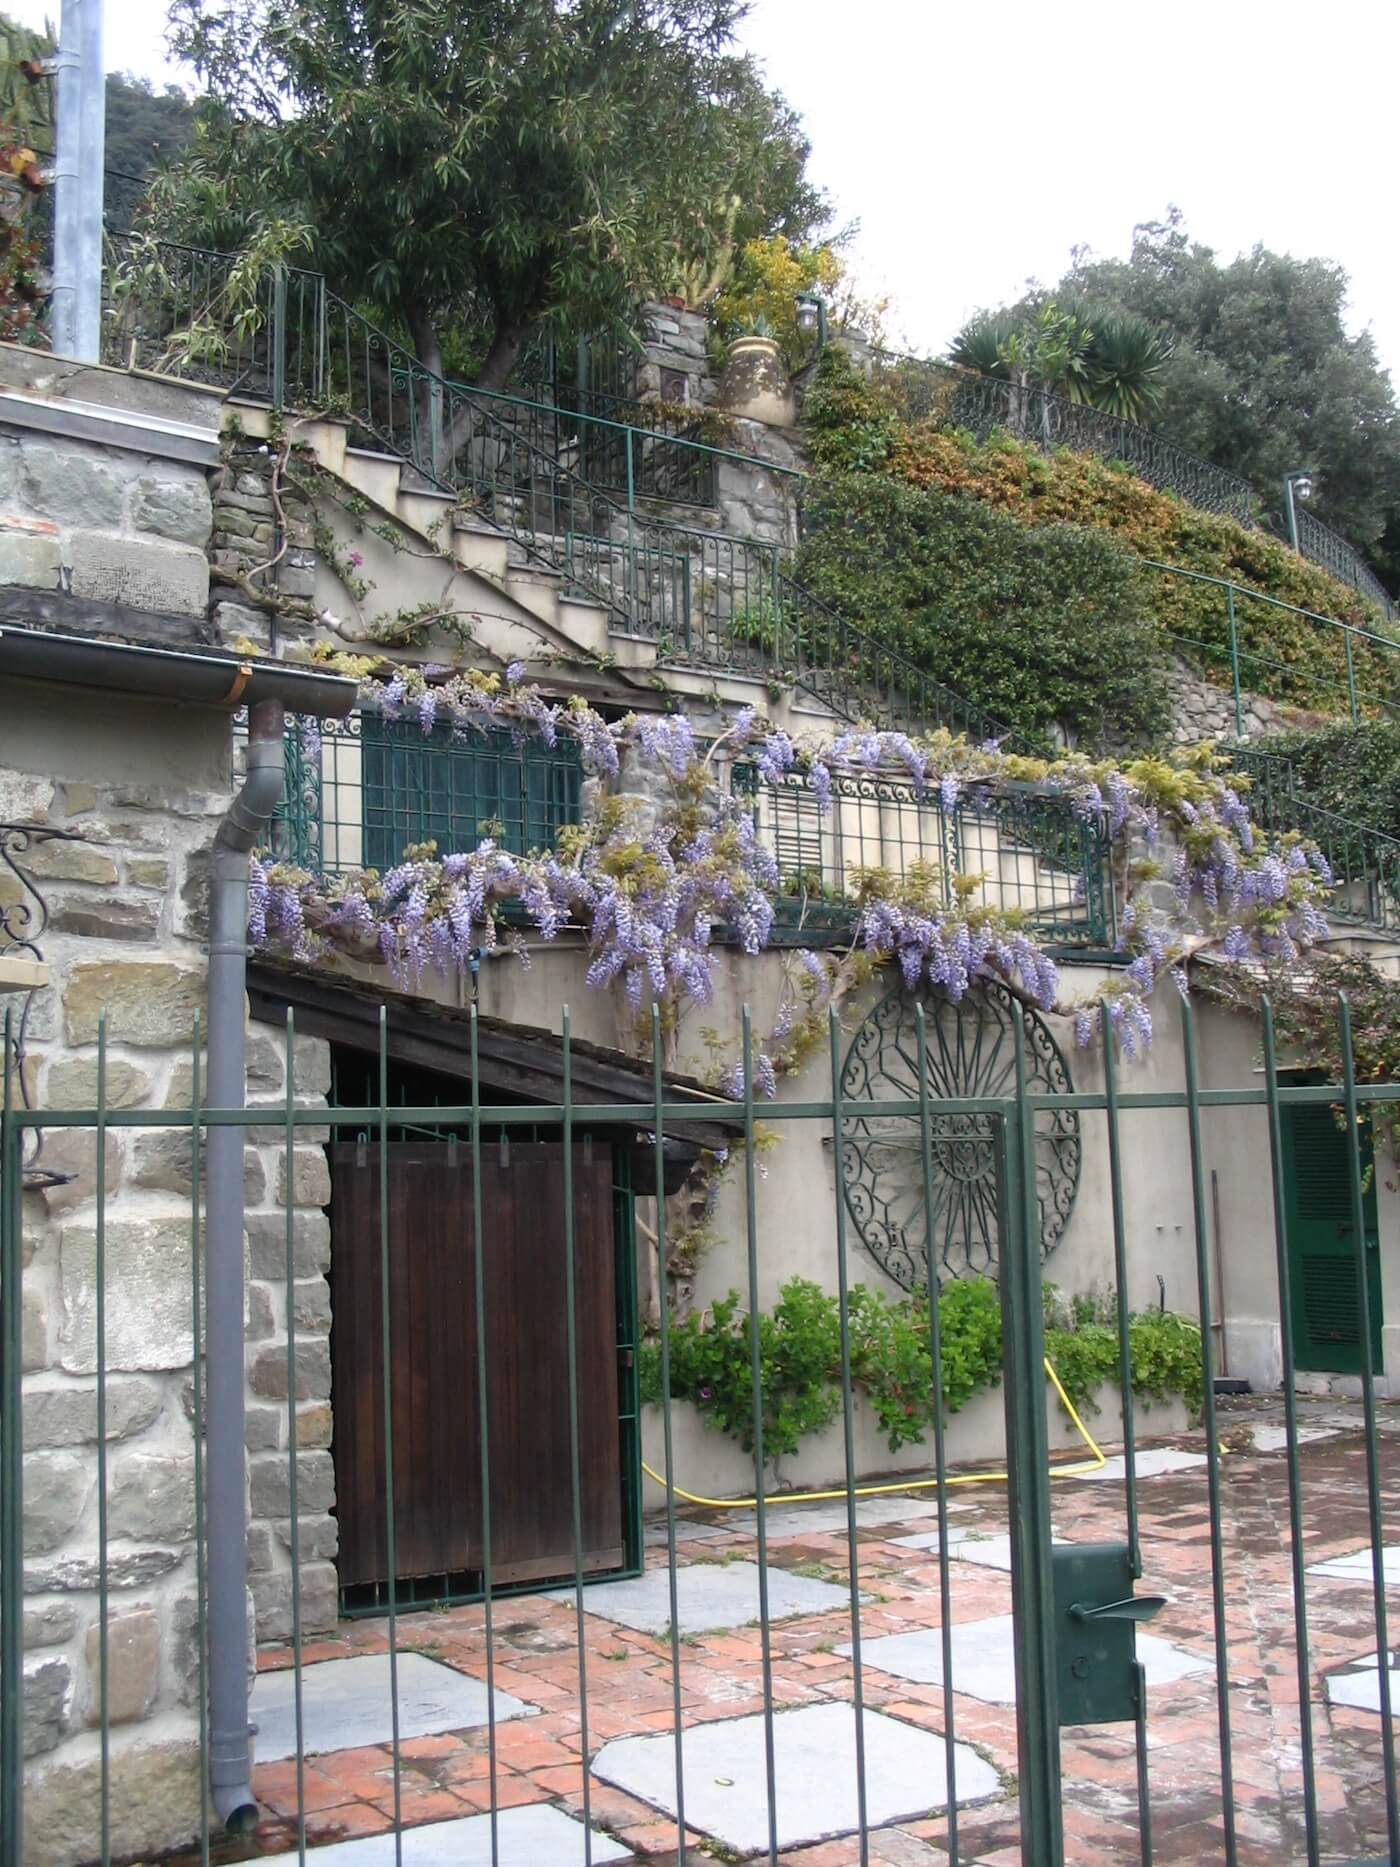 Scent memories of Wisteria, Corniglia, Cinque Terre National Park